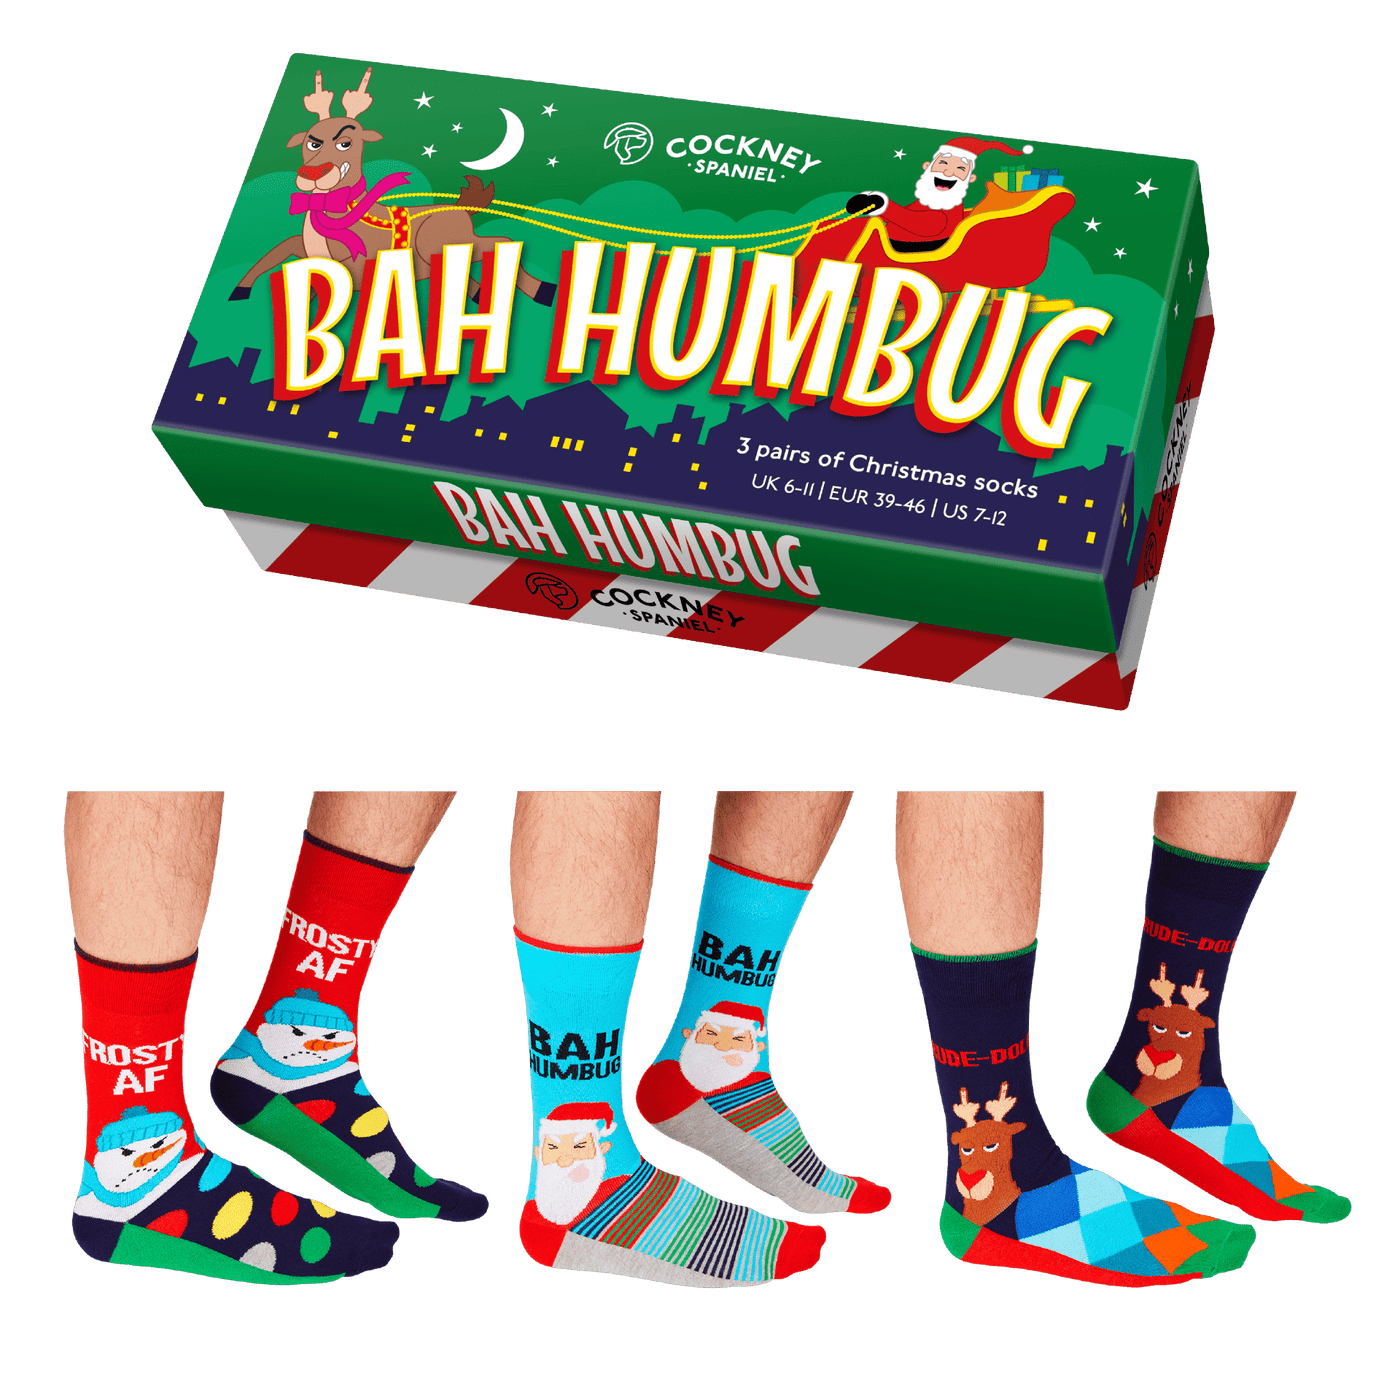 United Odd Socks Socks Bah Humbug 3 Pairs of Christmas Socks